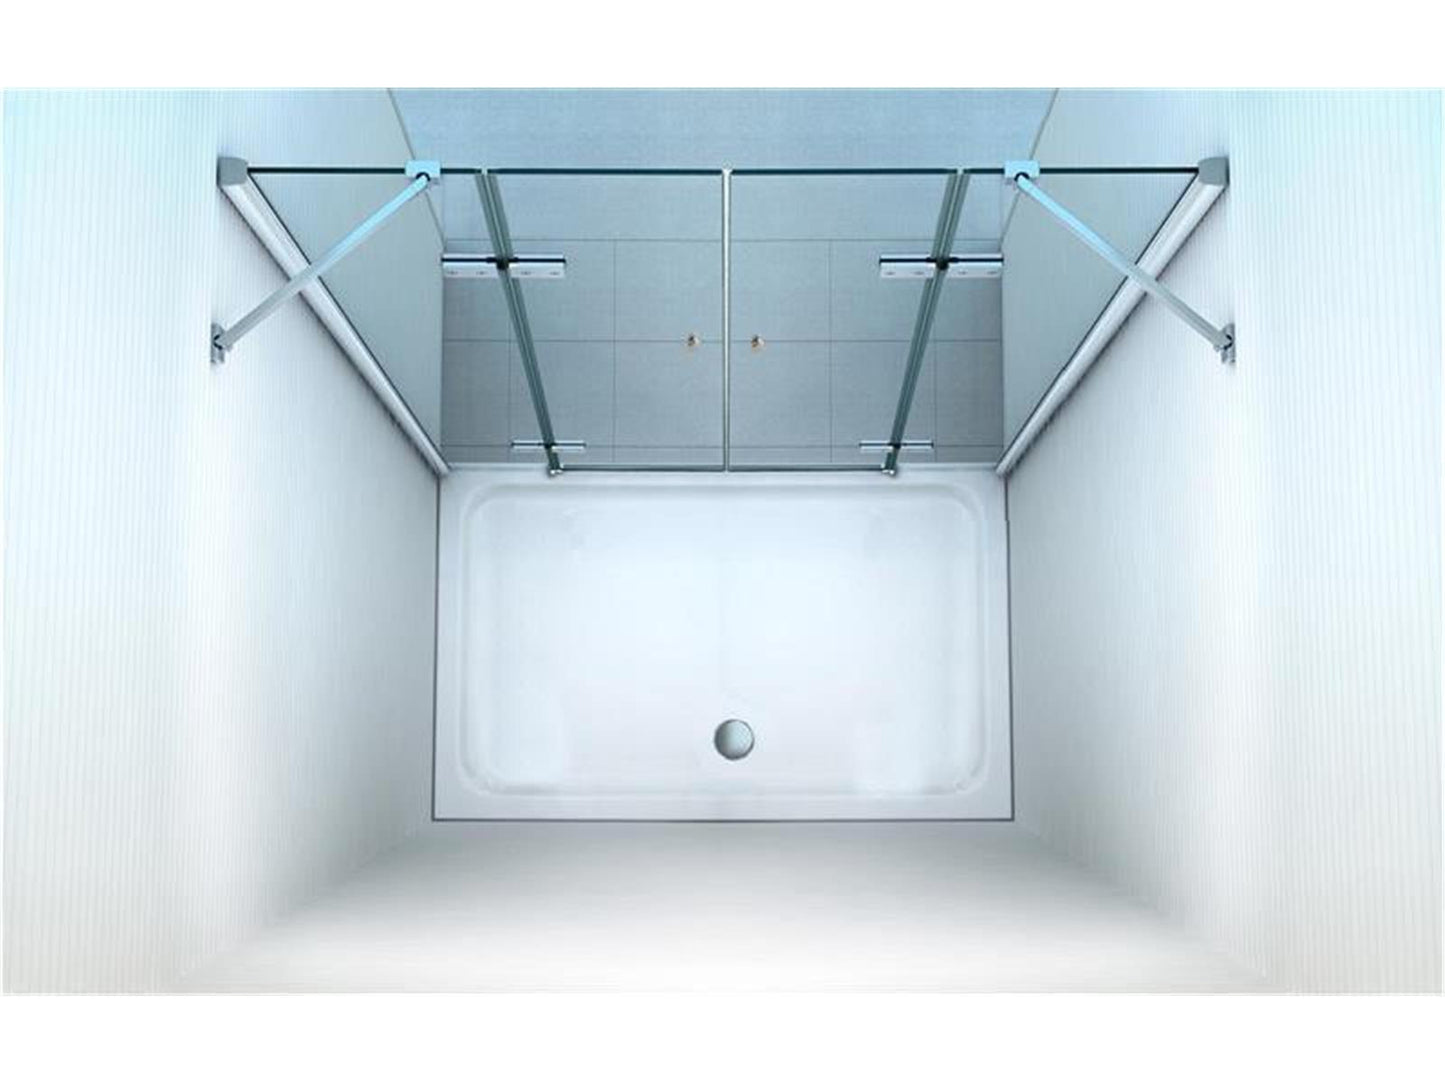 GlasHomeCenter - Cabina de nicho Utah (160 x 195 cm) - vidrio de seguridad templado de 8 mm - sin plato de ducha